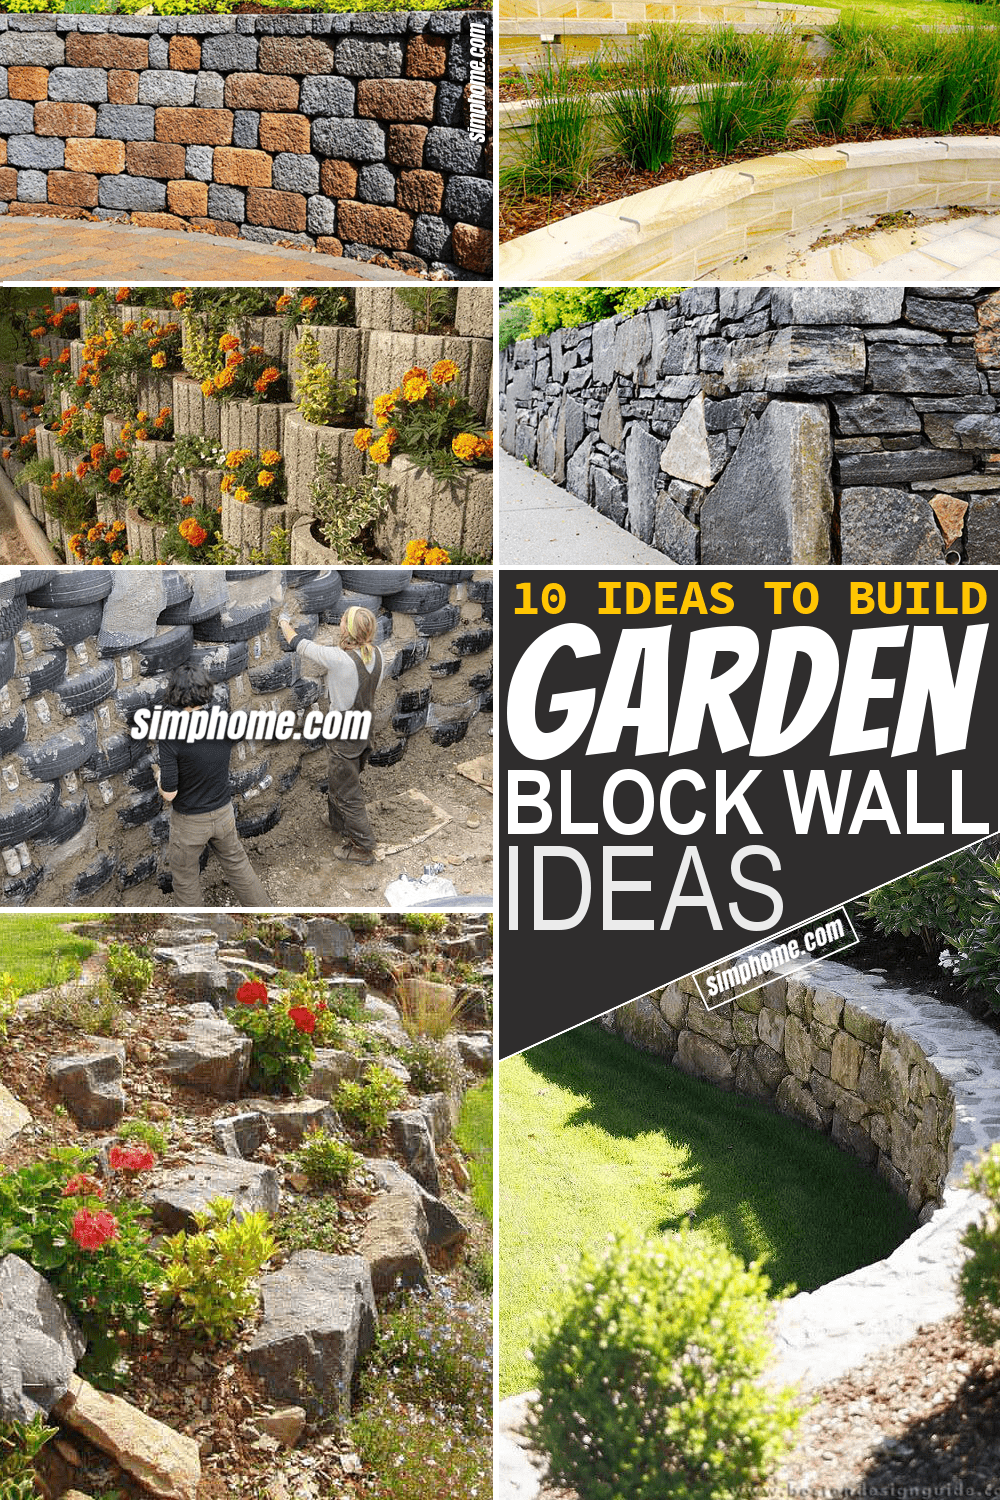 Simphome.com 10 Garden Block Wall Ideas Featured Pinterest Image